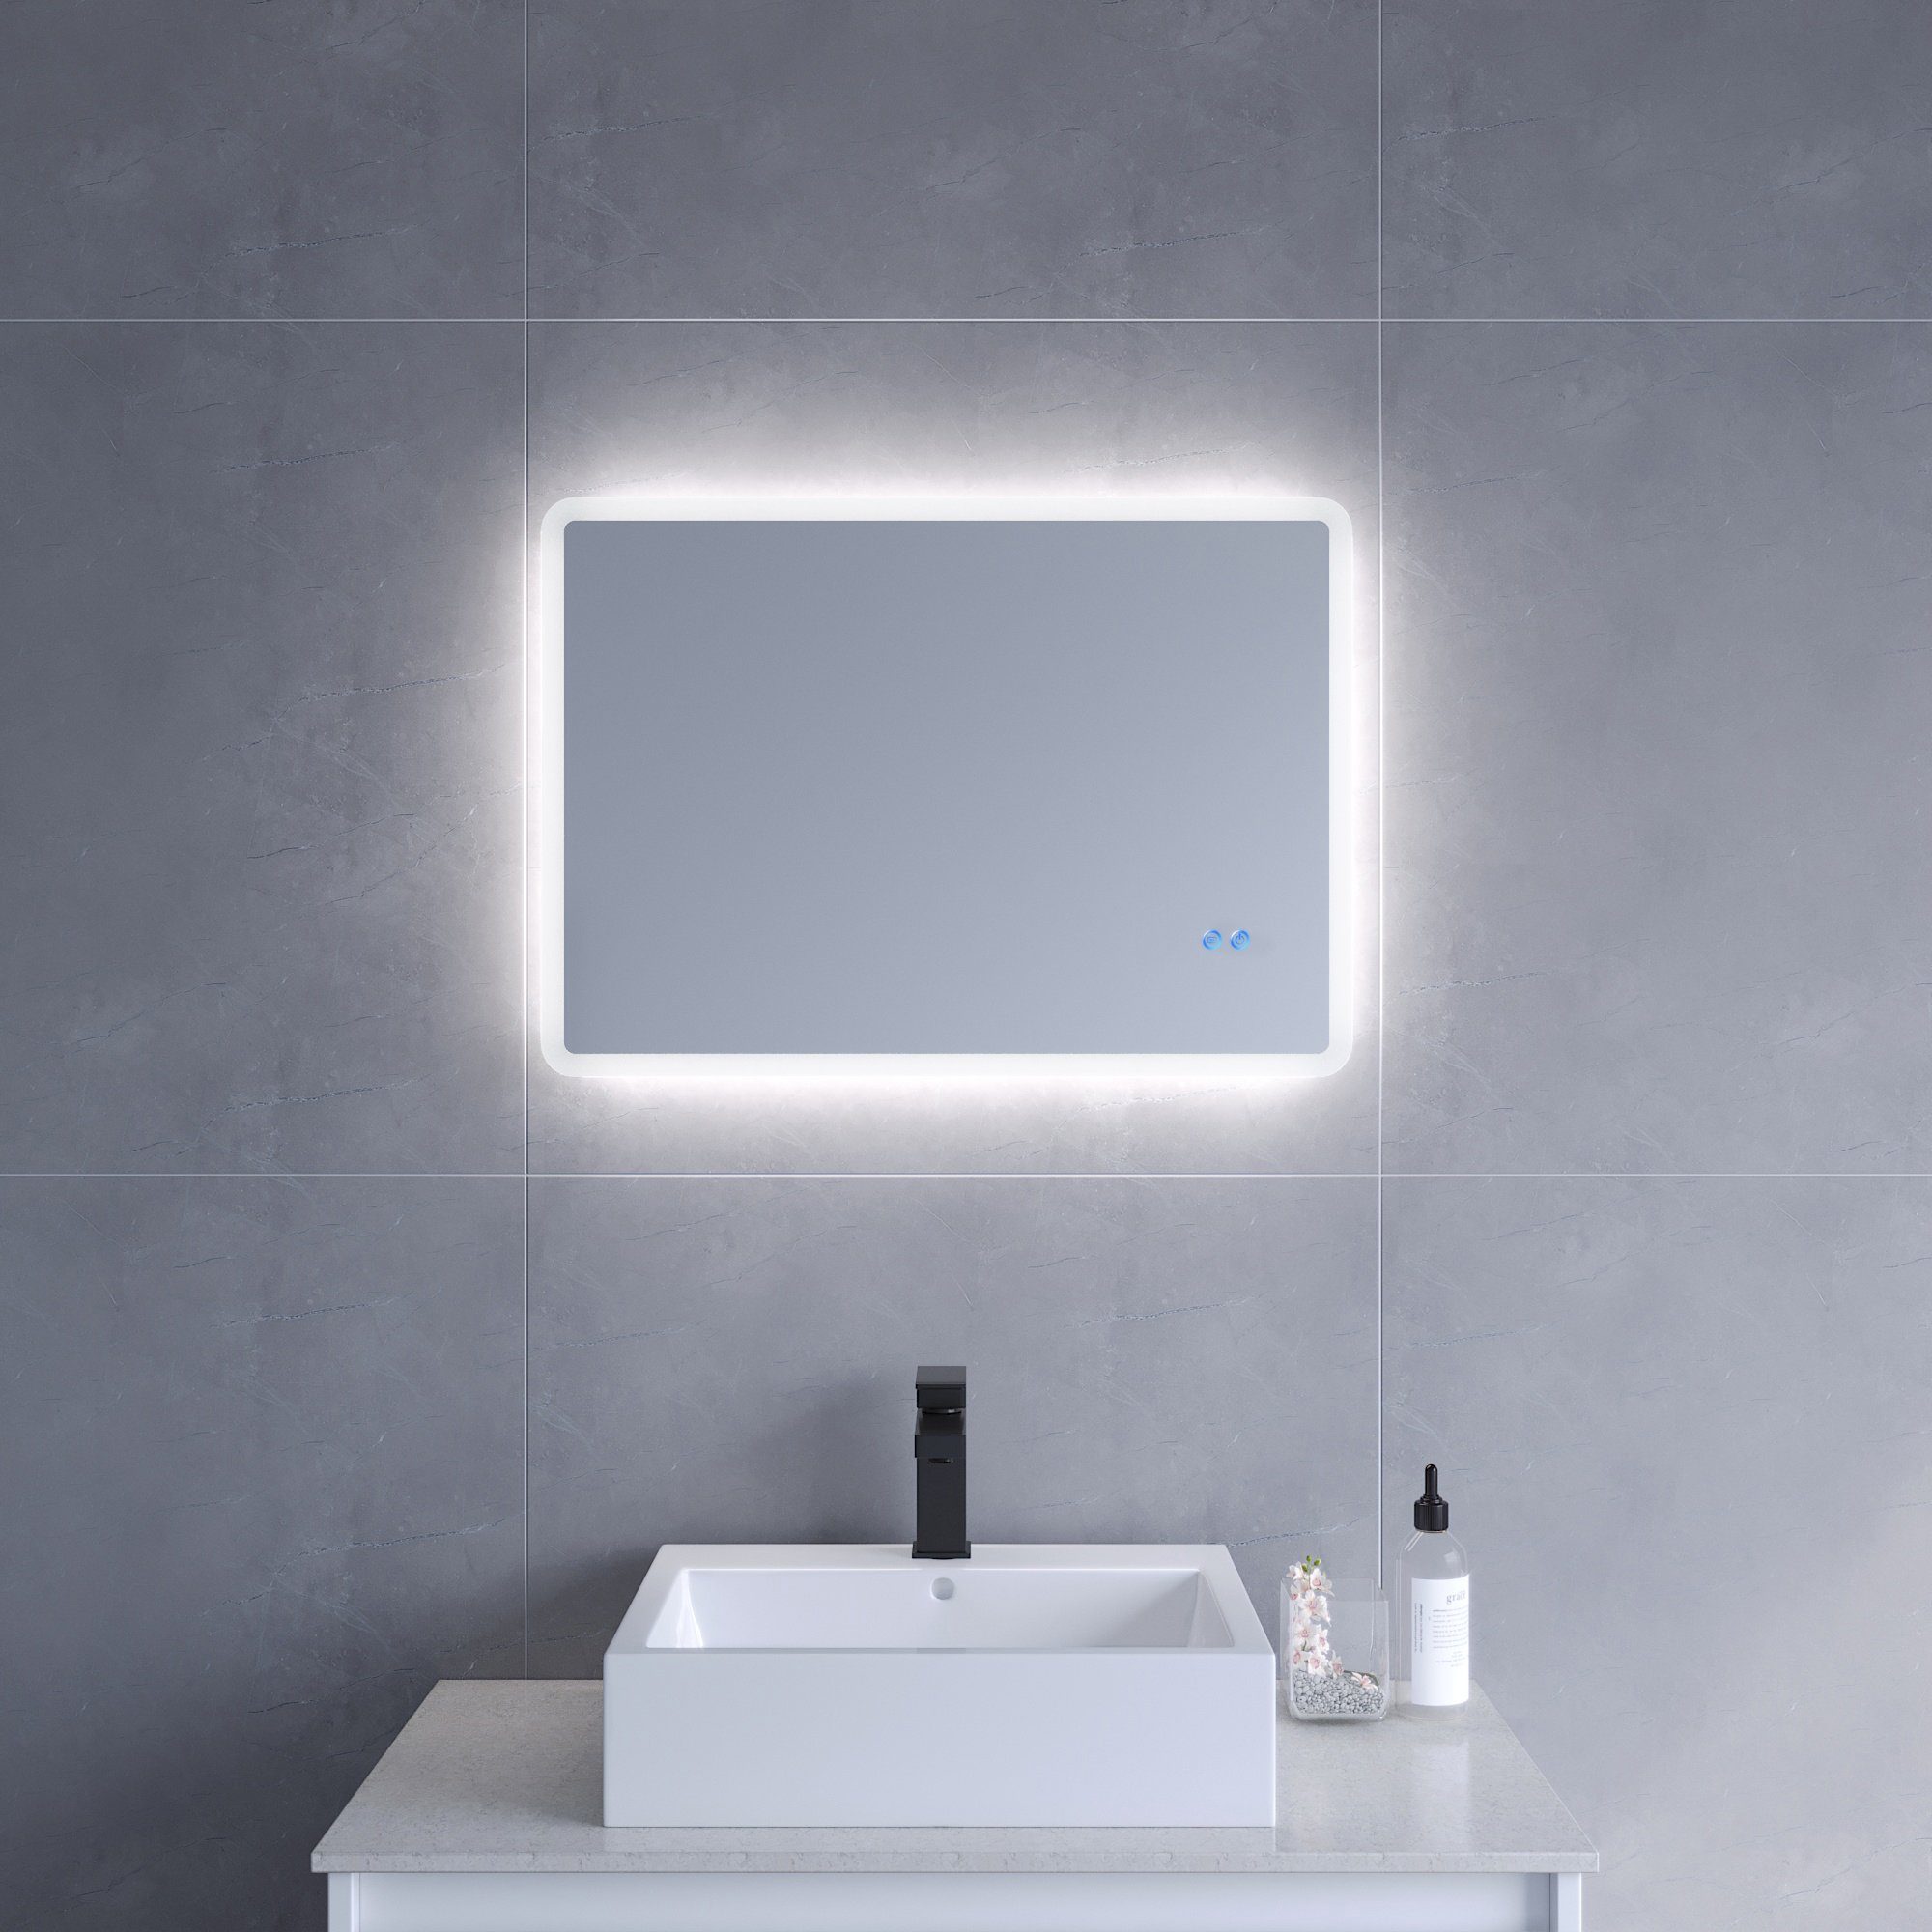 AQUALAVOS Badspiegel LED Badspiegel mit Beleuchtet Touch Dimmbar Antibeschlag Wandspiegel, Kaltweiß 6400K, Horizontale / vertikale Aufhängung | Badspiegel